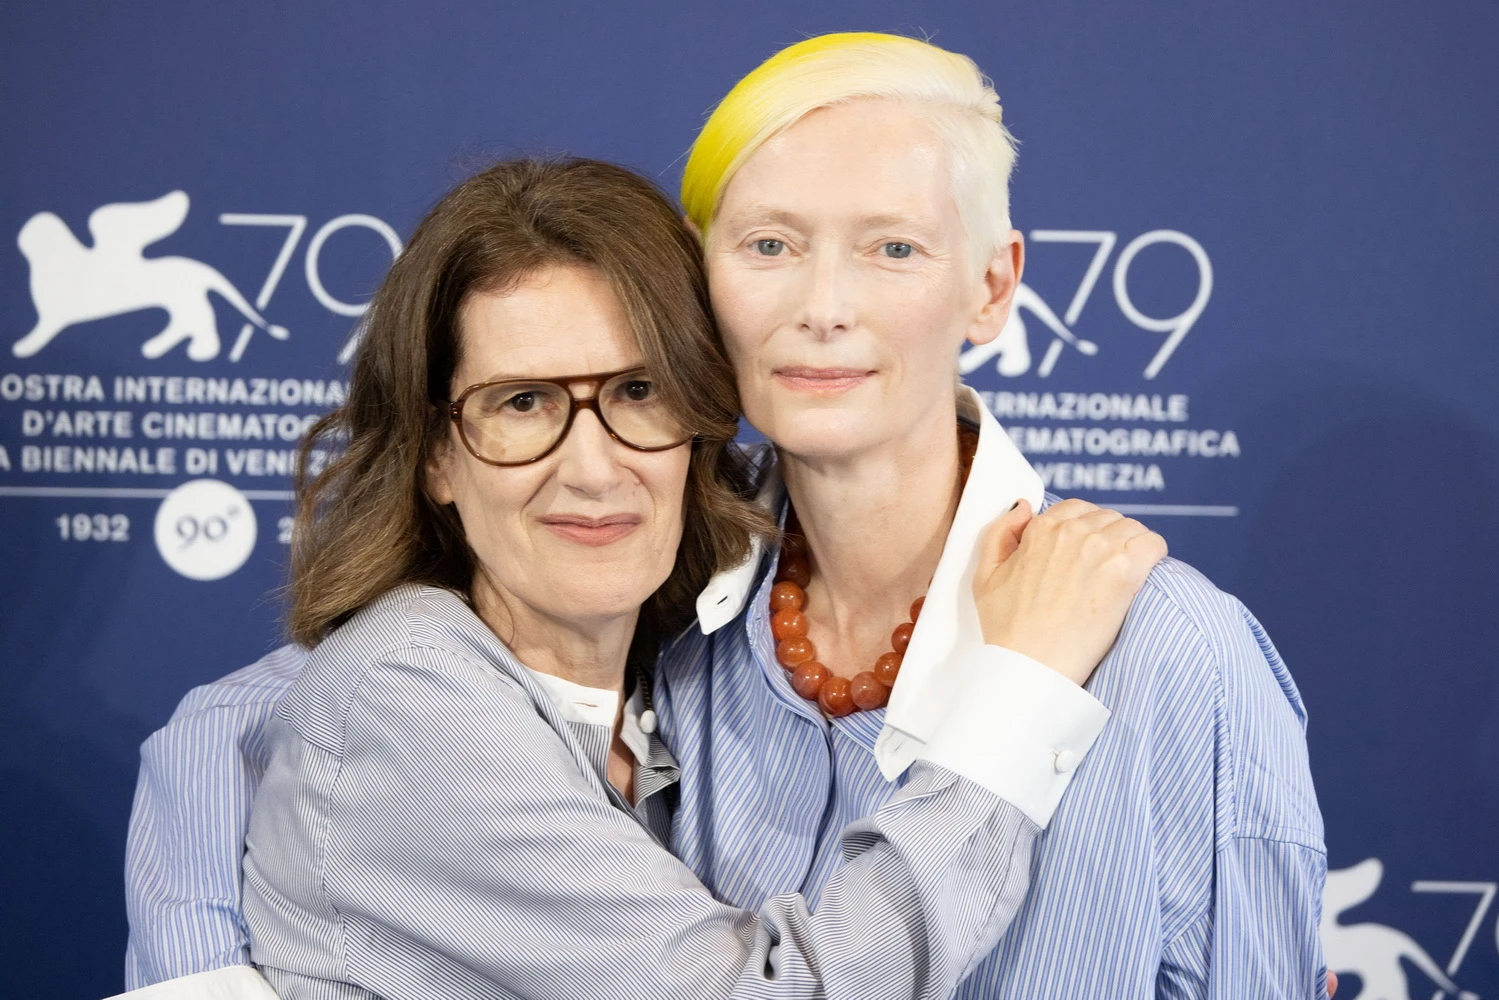 Joanna Hoff mit Tilda Swinton bei der Premiere von "The Eternal Daughter" 2022 i Venedig (© IMAGO/ZUMA Press/Cinzia Camela)